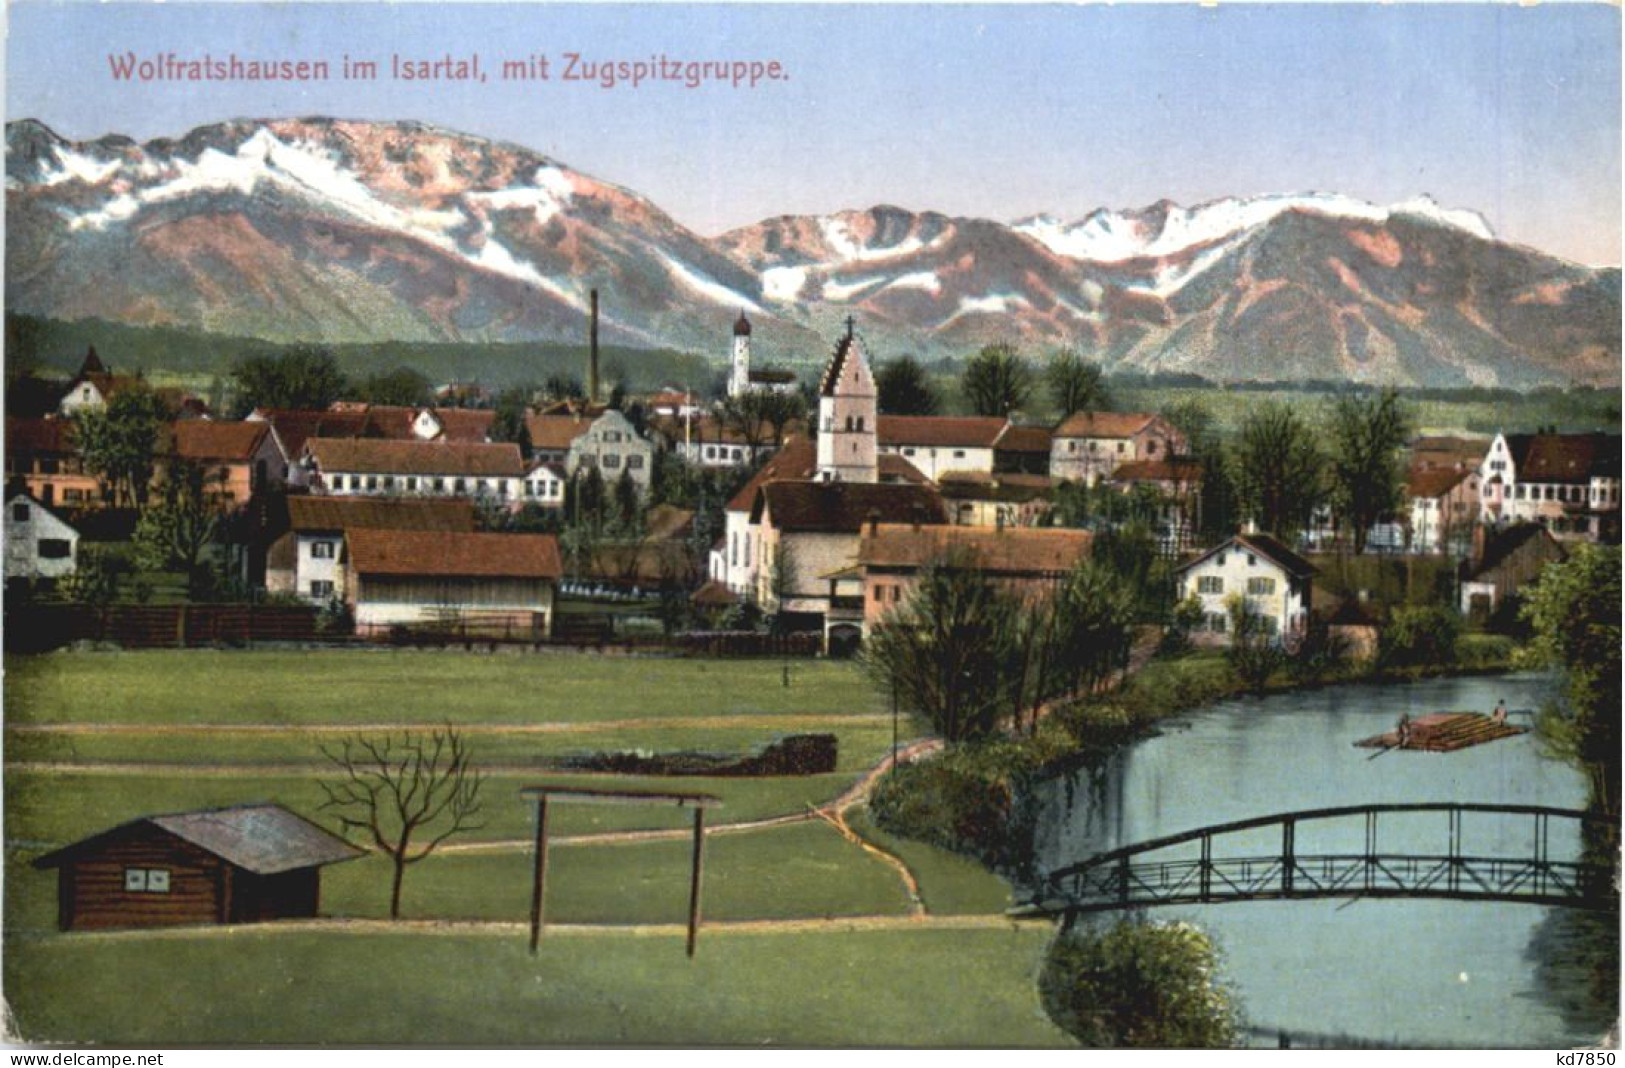 Wolfratshausen - Bad Toelz